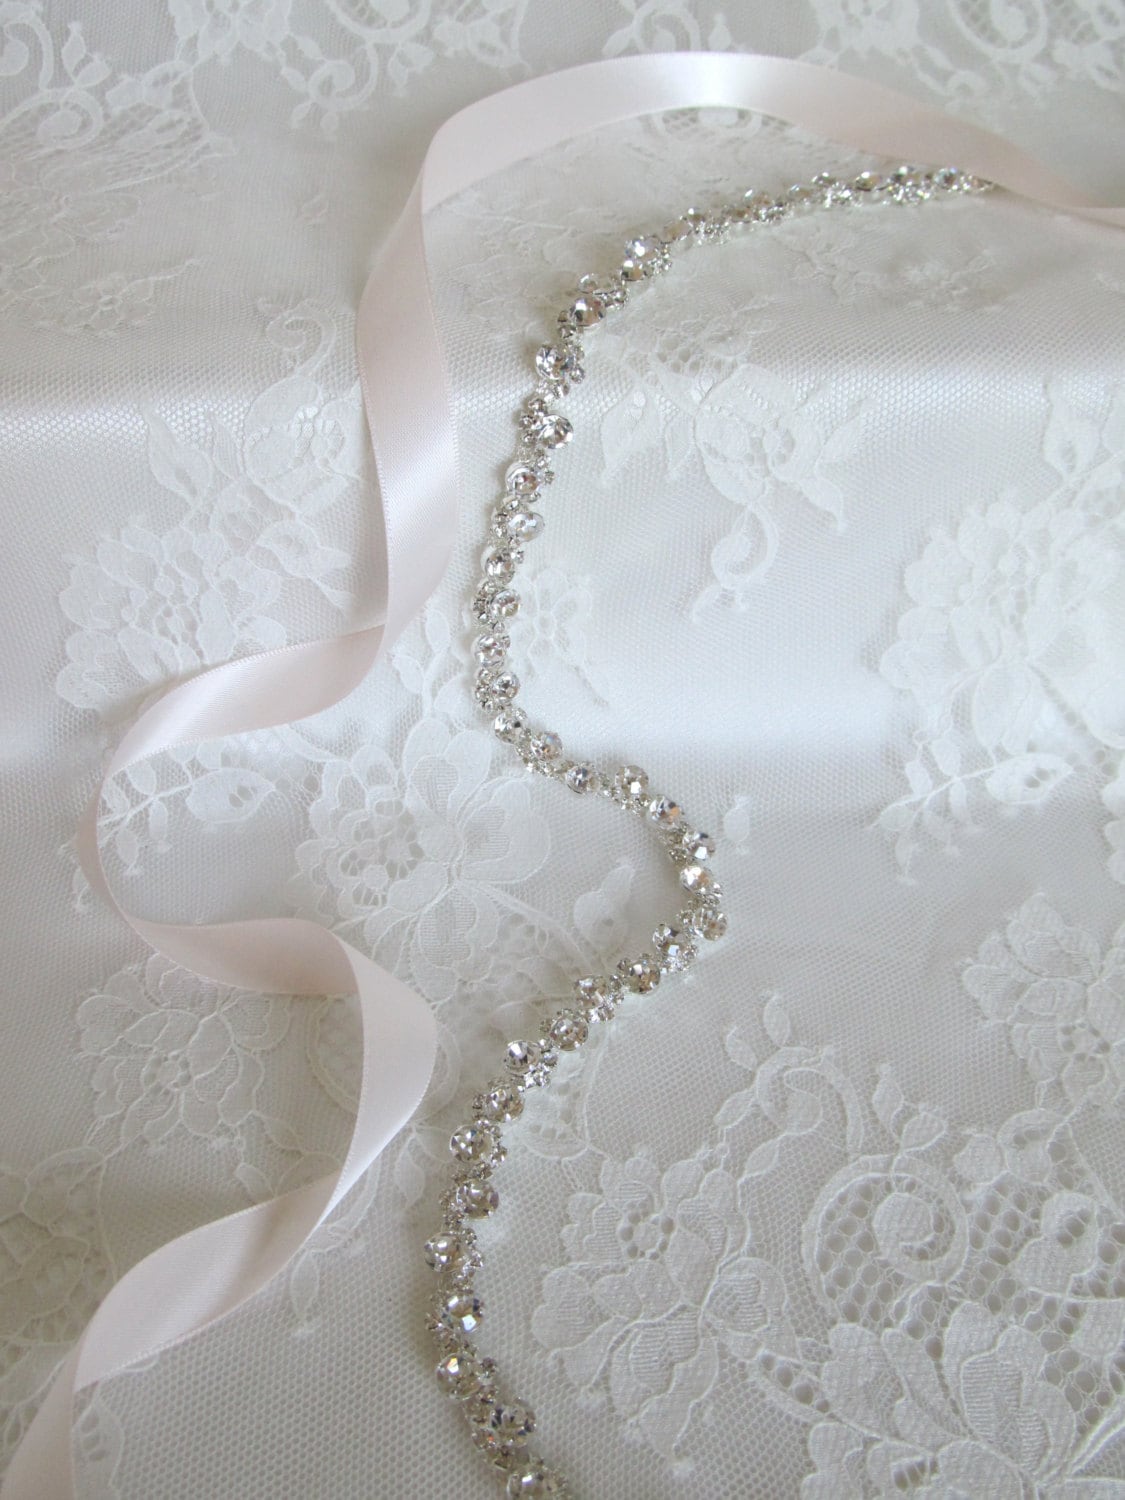 Silver Crystal Rhinestone Bridal Sash, Wedding sash,Bridal Accessories,Bridal Belt,Style #31